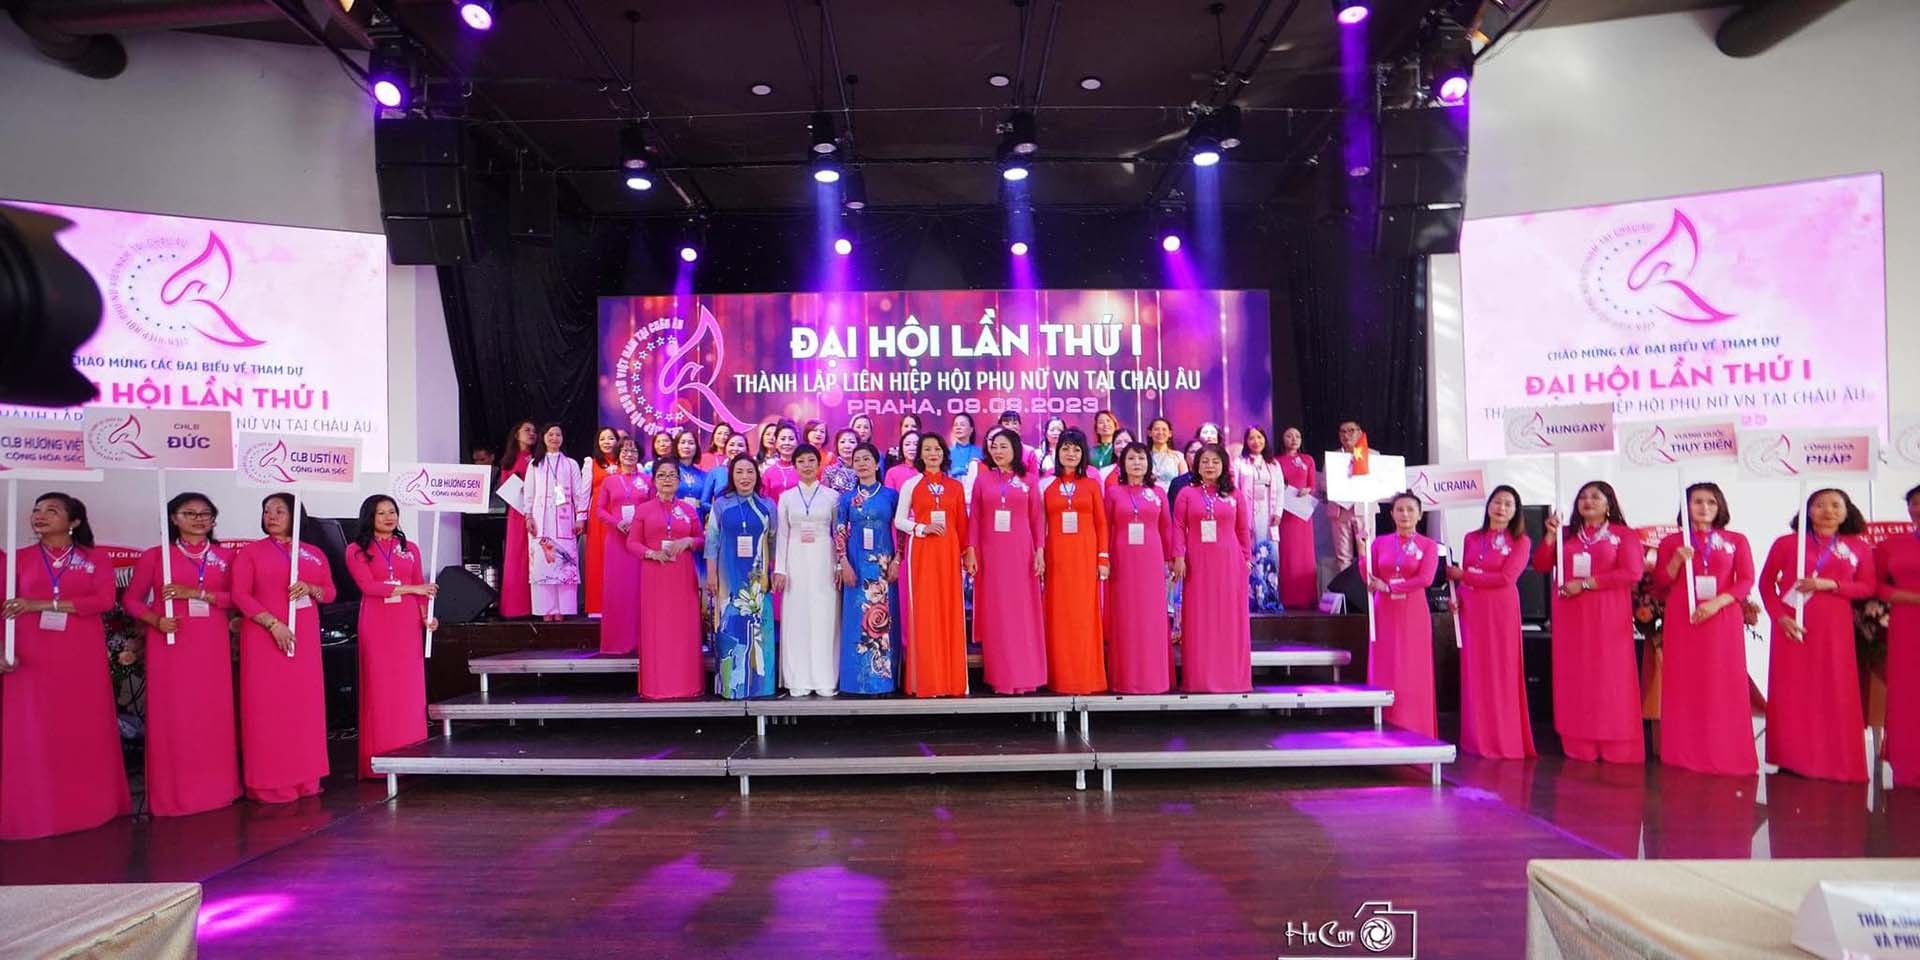 Hoạt động tại Đại hội thành lập Liên hiệp Hội phụ nữ Việt Nam tại châu Âu. (Ảnh: BTC)